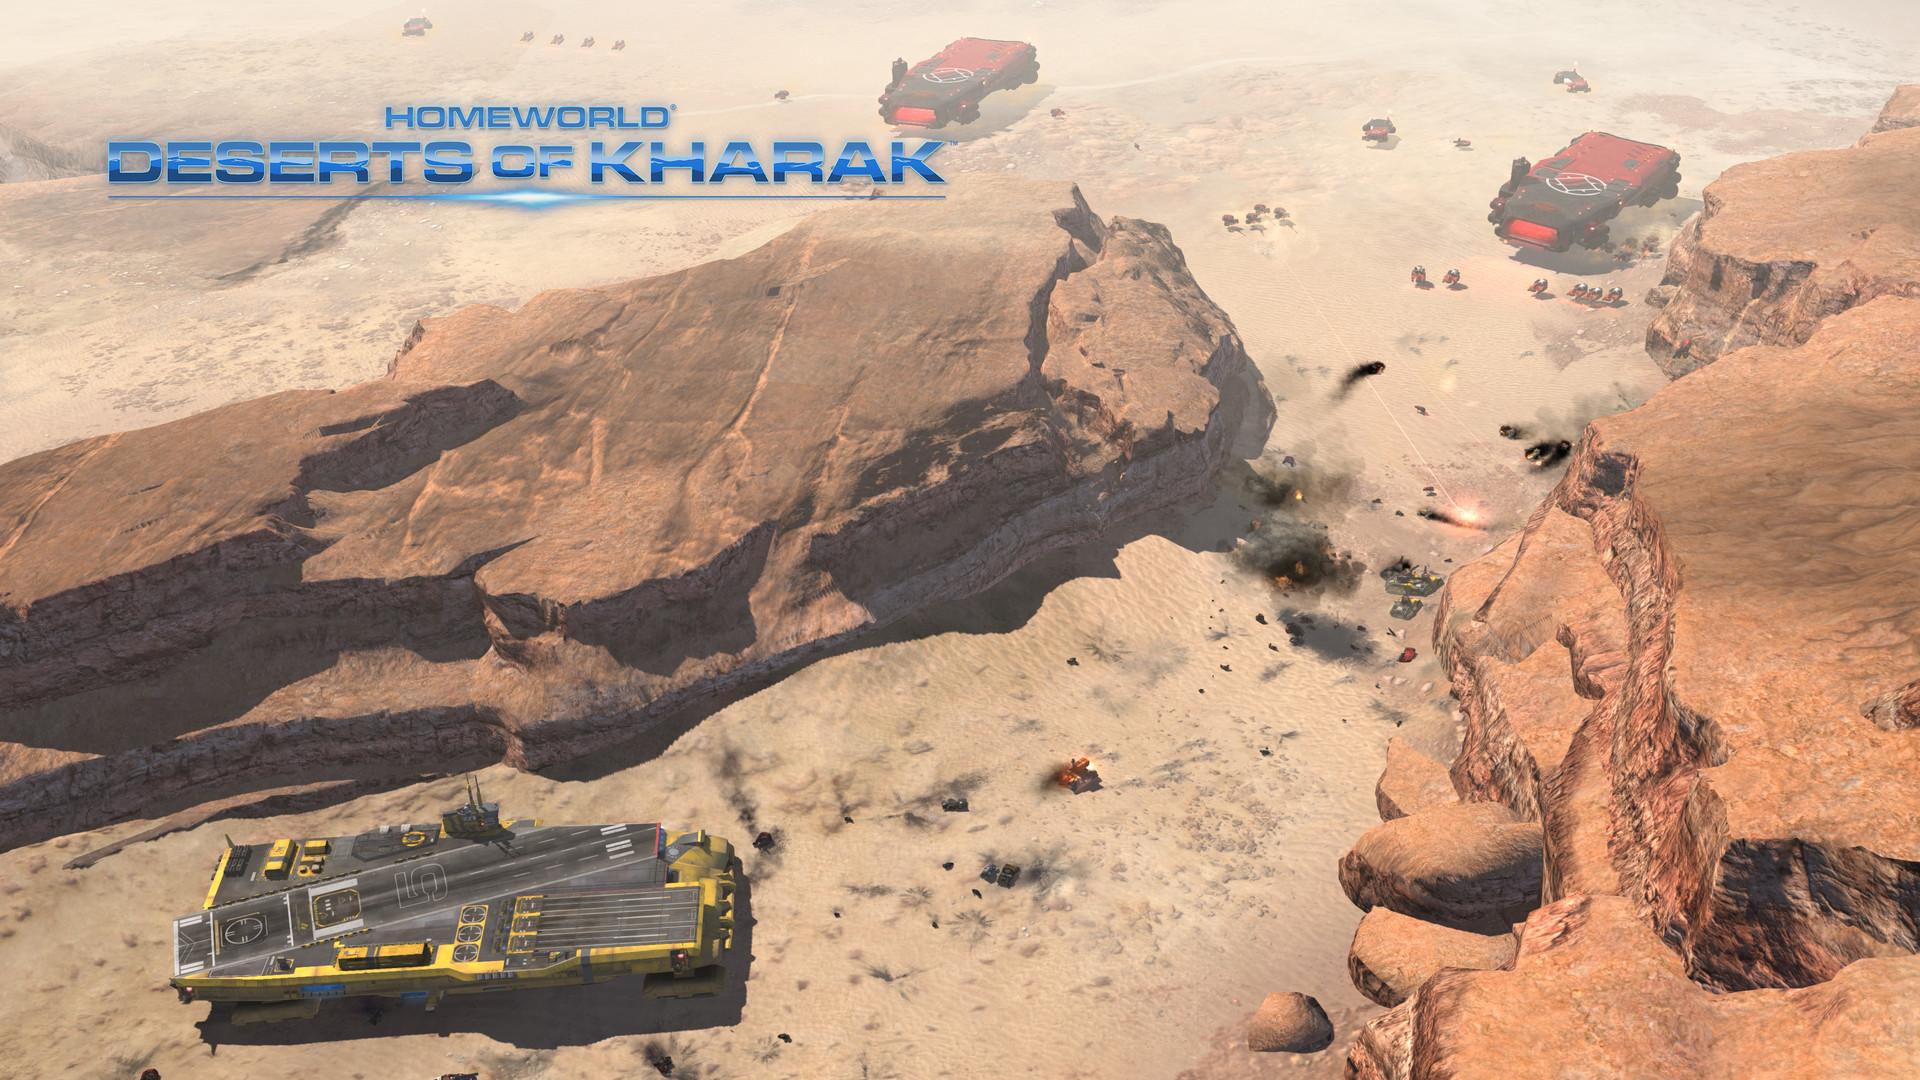 Screenshot №8 from game Homeworld: Deserts of Kharak